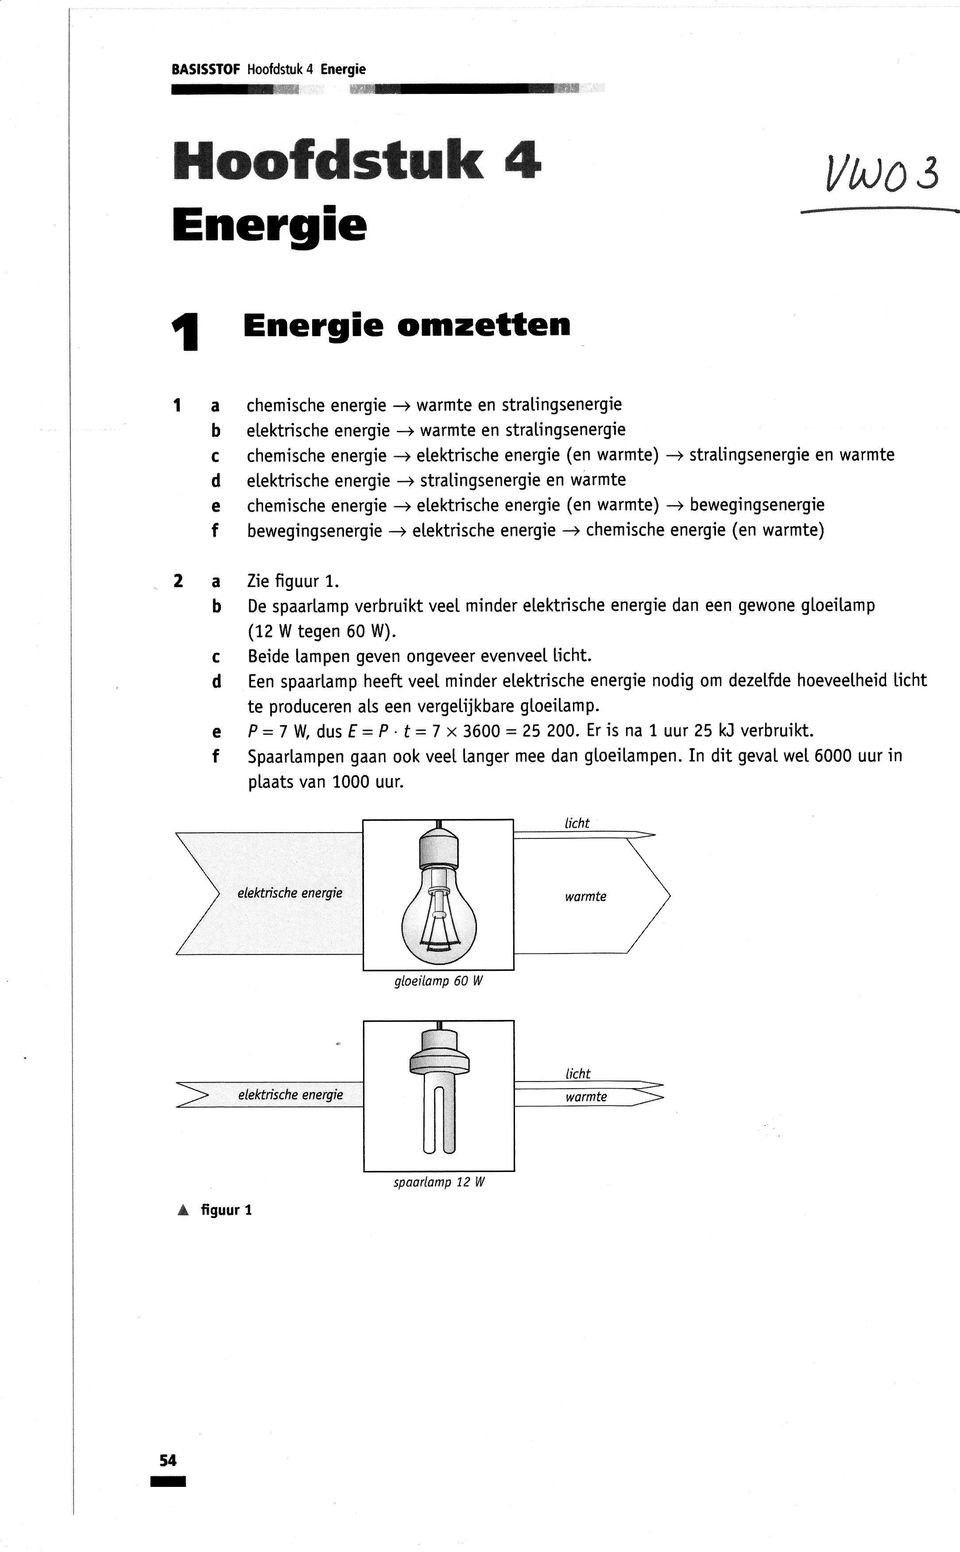 ektrishe energie -+ stratingsenergie warmte hemishe energie -+ etektrishe energie (en warmte) -+ ewegingsenergie ewegingsenergie *r etektrishe energie -+ hemishe energie (en warmte) Zie figuur 1.